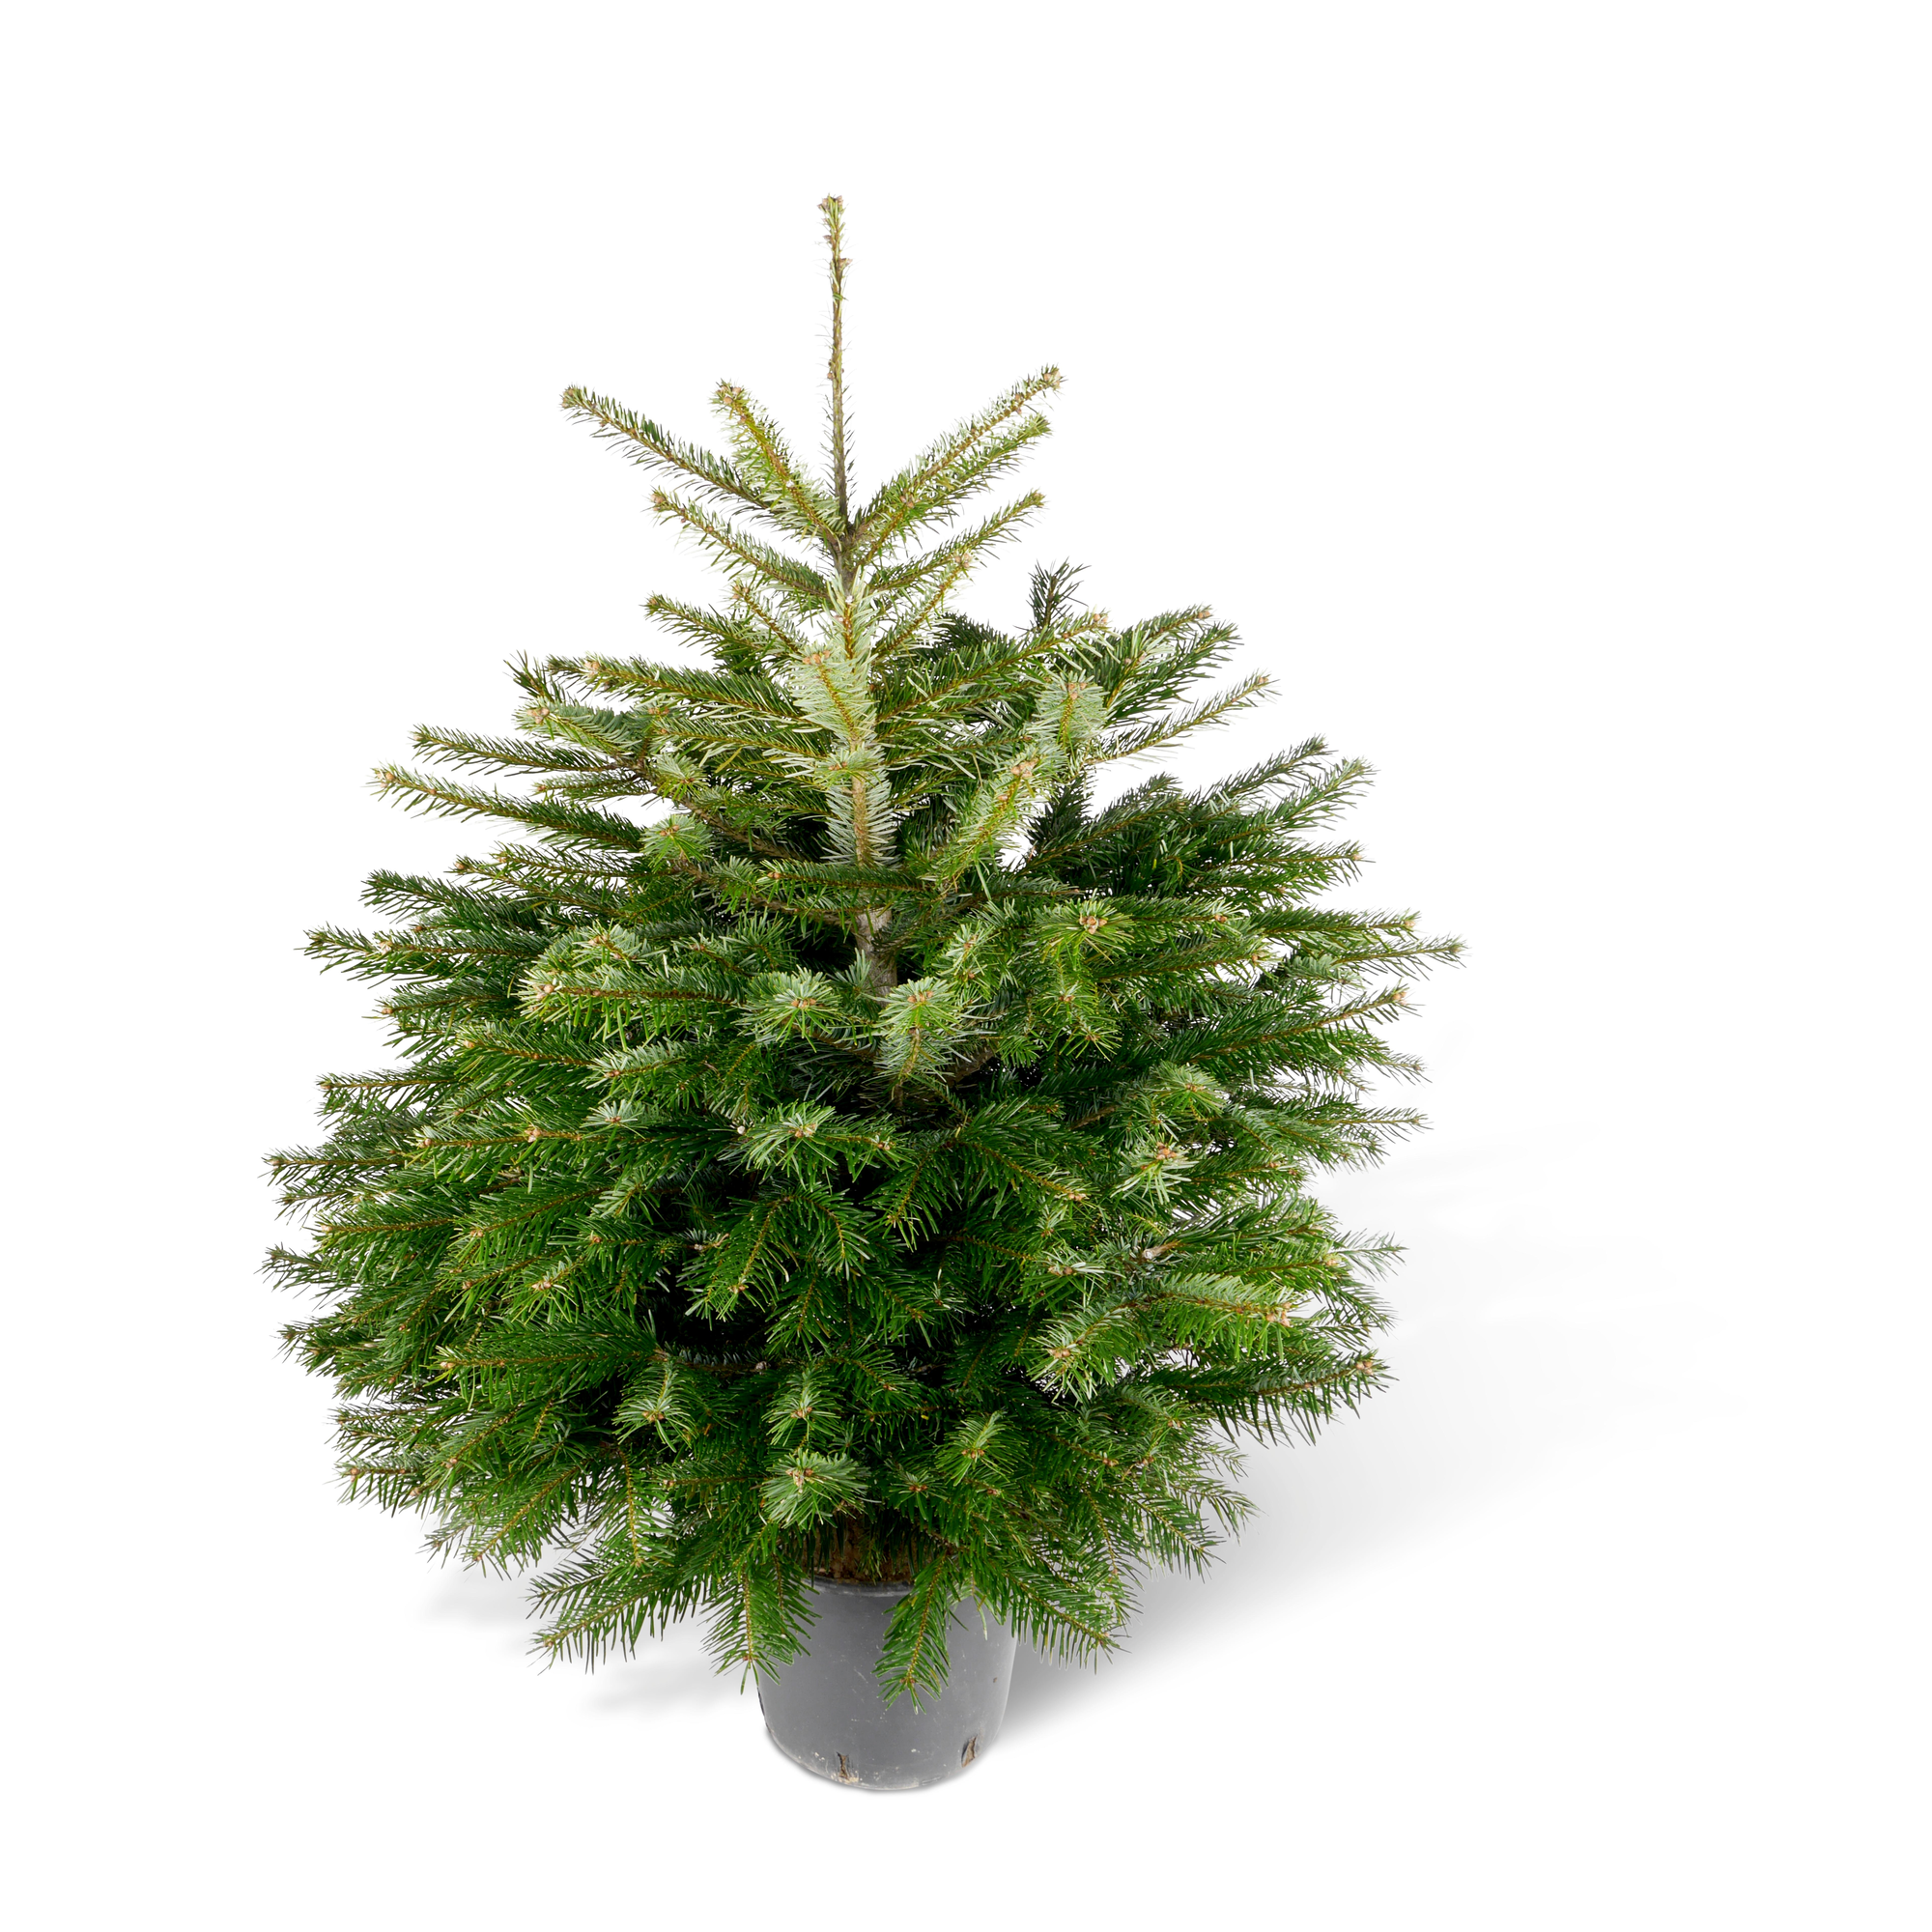 Fair Trees® Weihnachtsbaum Nordmanntanne topfgedrückt 60-80 cm + product picture